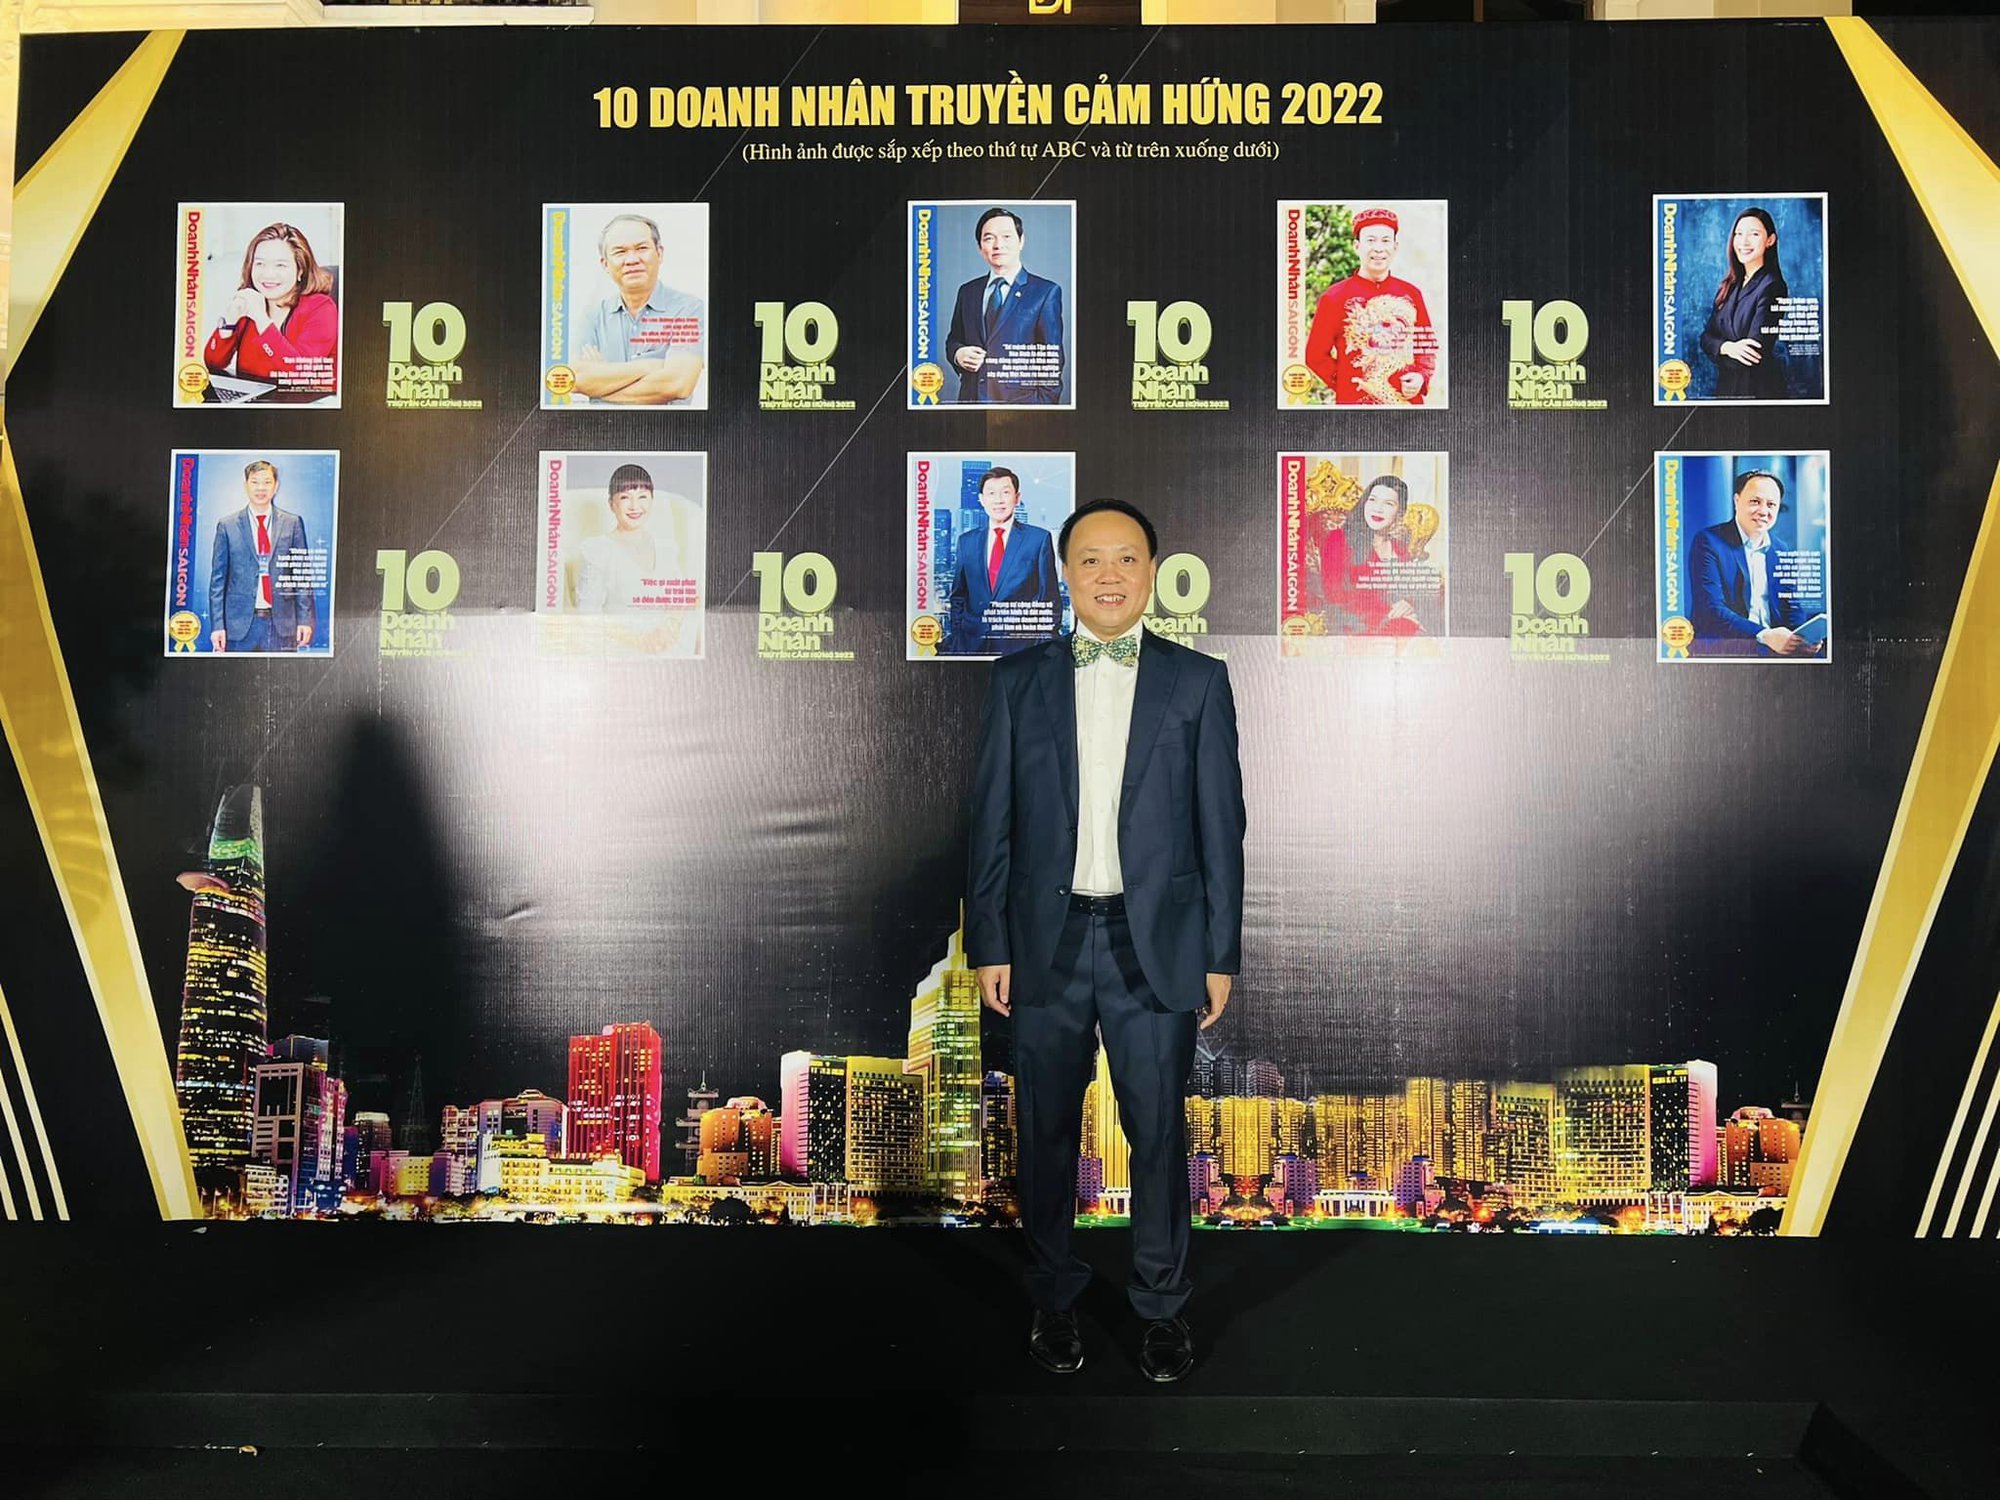 &quot;Vua tiêu&quot; Phan Minh Thông được vinh danh là Doanh nhân truyền cảm hứng năm 2022 - Ảnh 3.